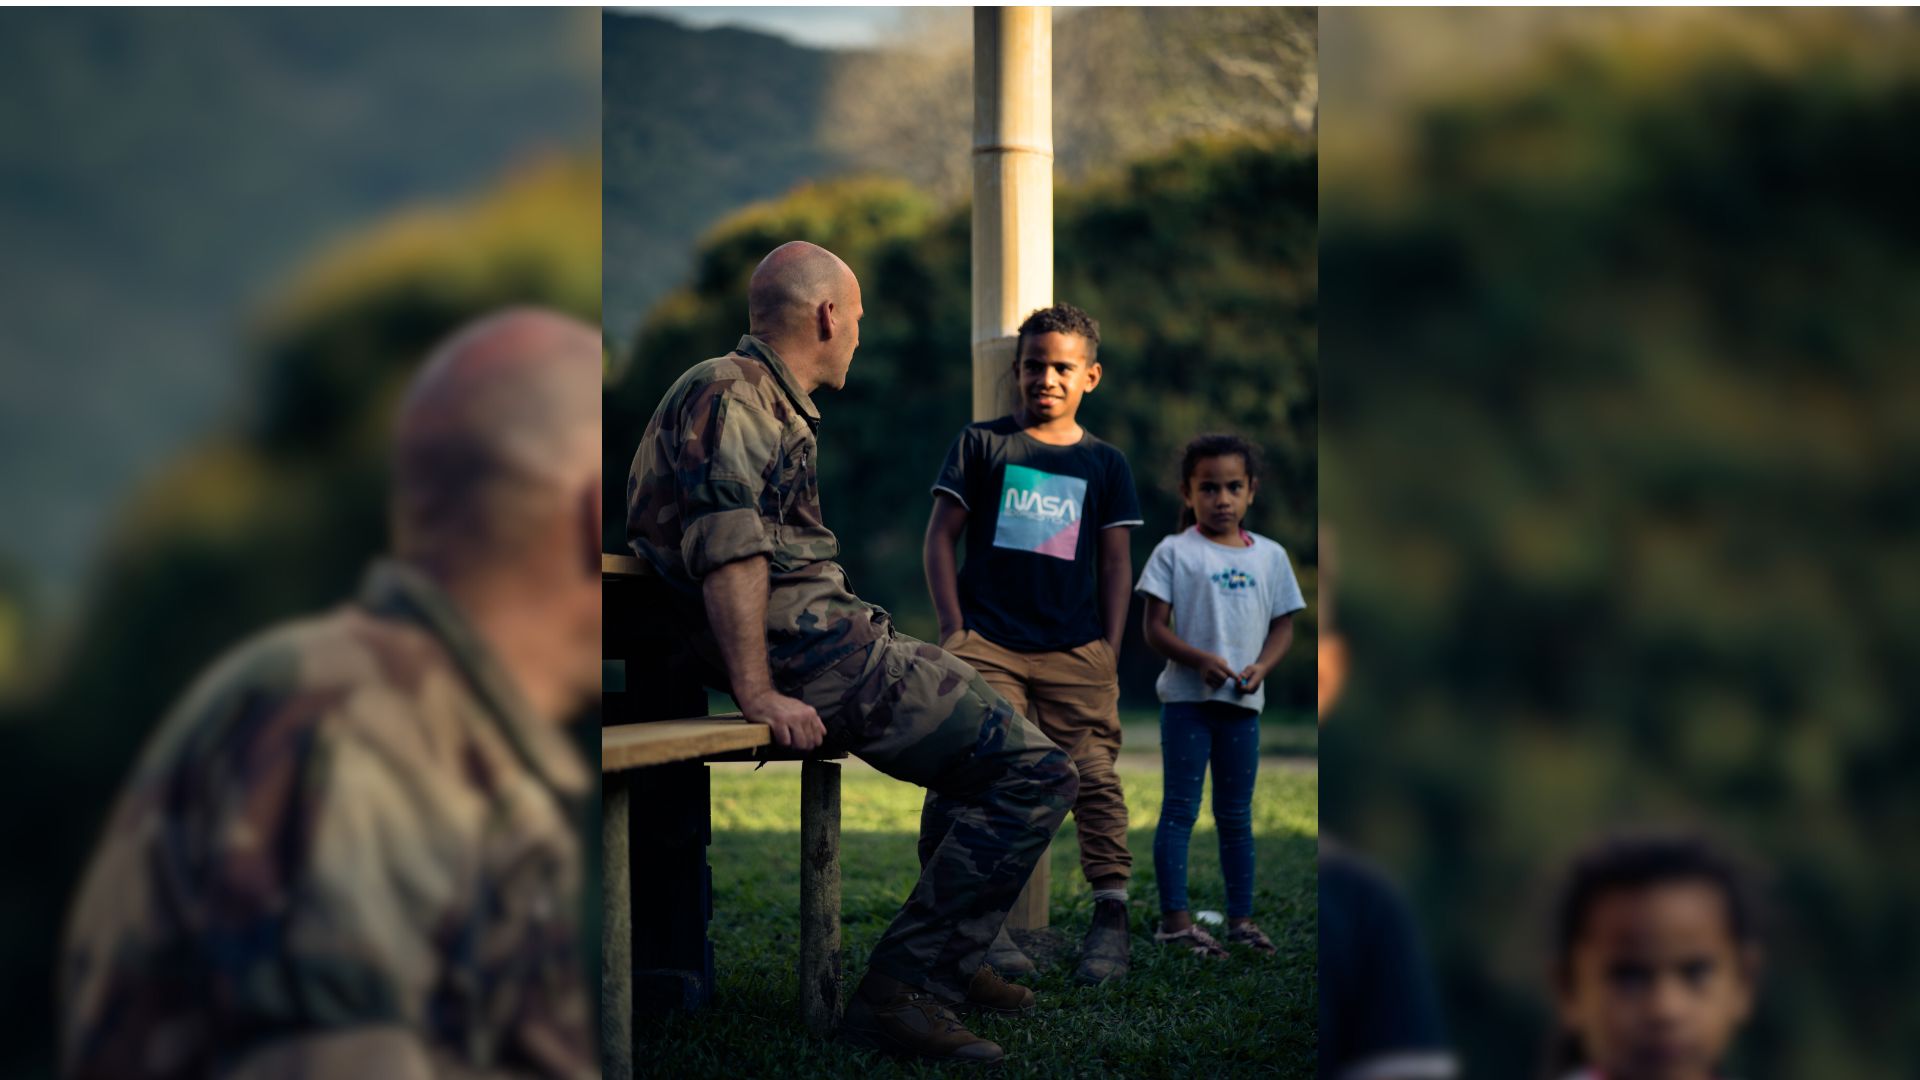 À leur retour de l’école, les enfants apprécient jouer ou discuter avec les militaires.